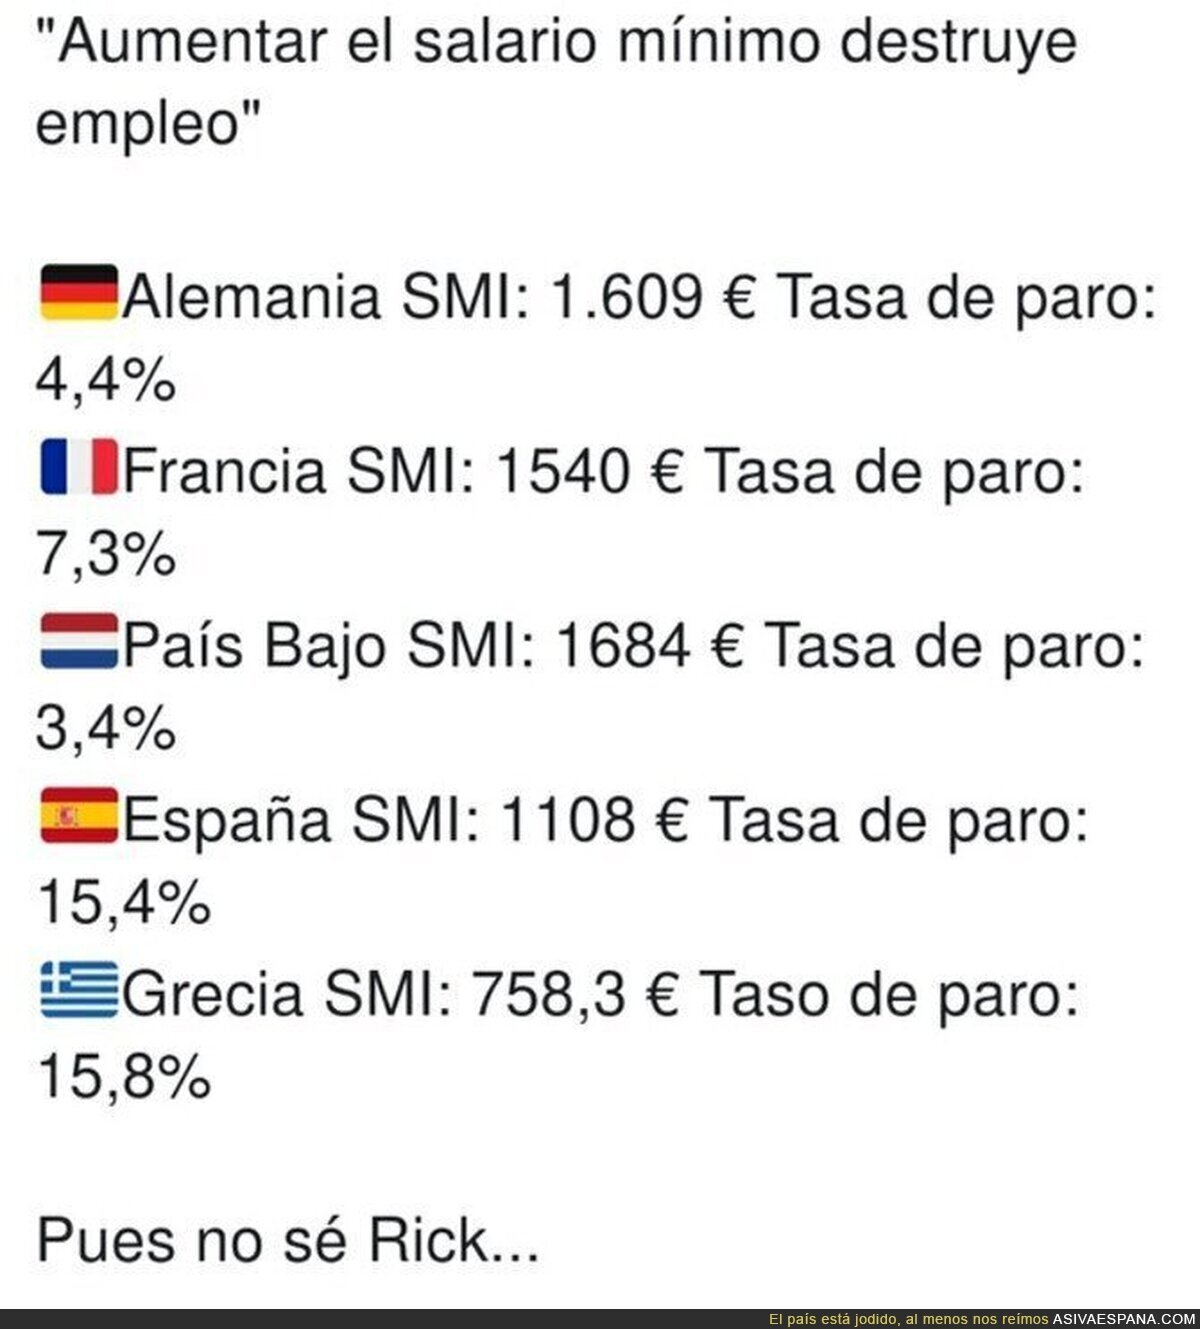 Así de fácil se desmonta lo del Banco de España